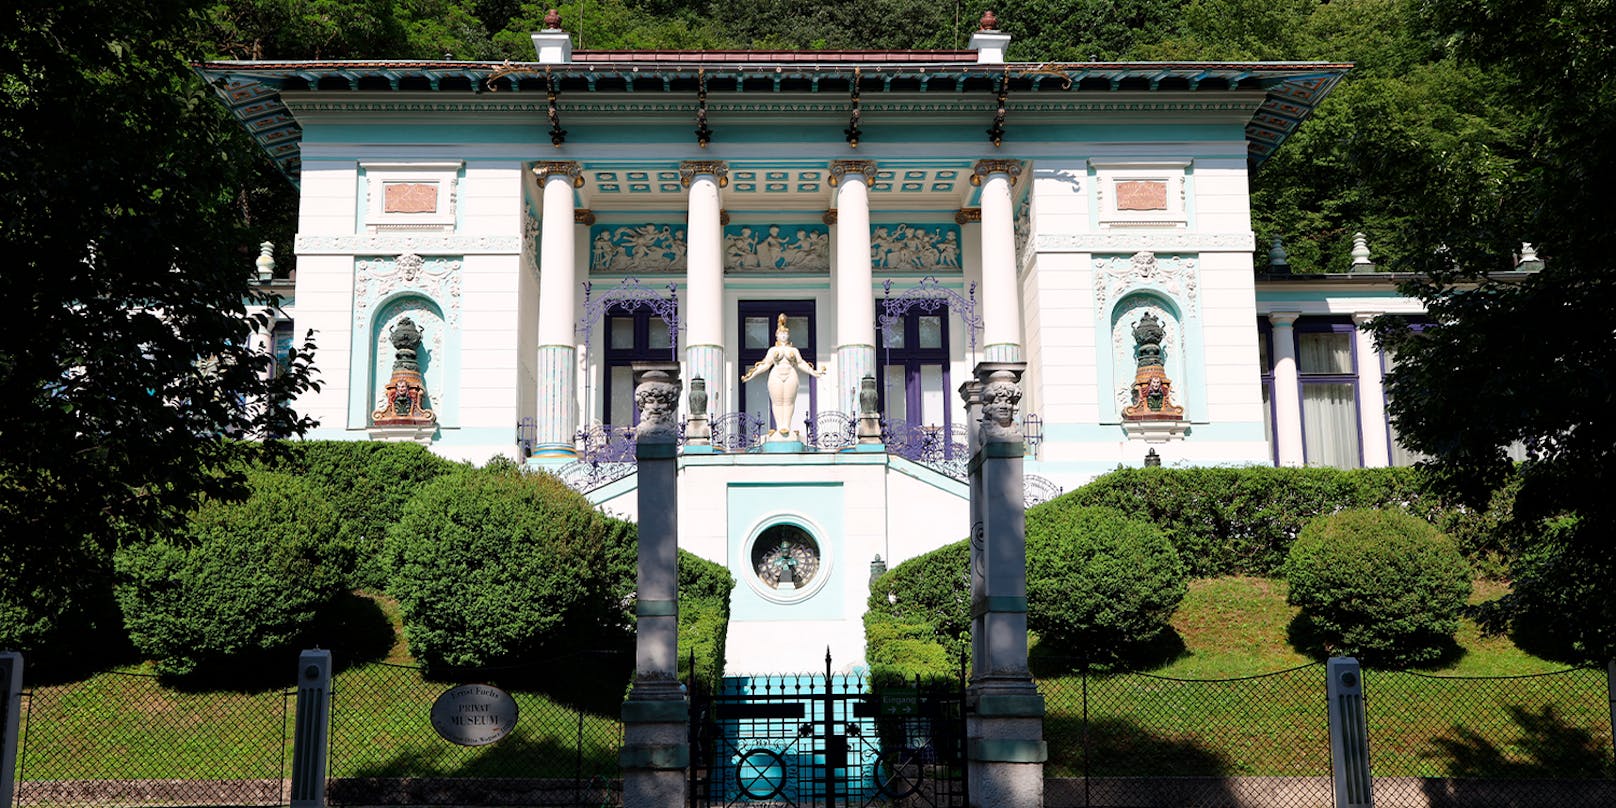 In dem 1888 von Otto Wagner errichteten Villengebäude befindet sich das Ernst Fuchs-Museum.